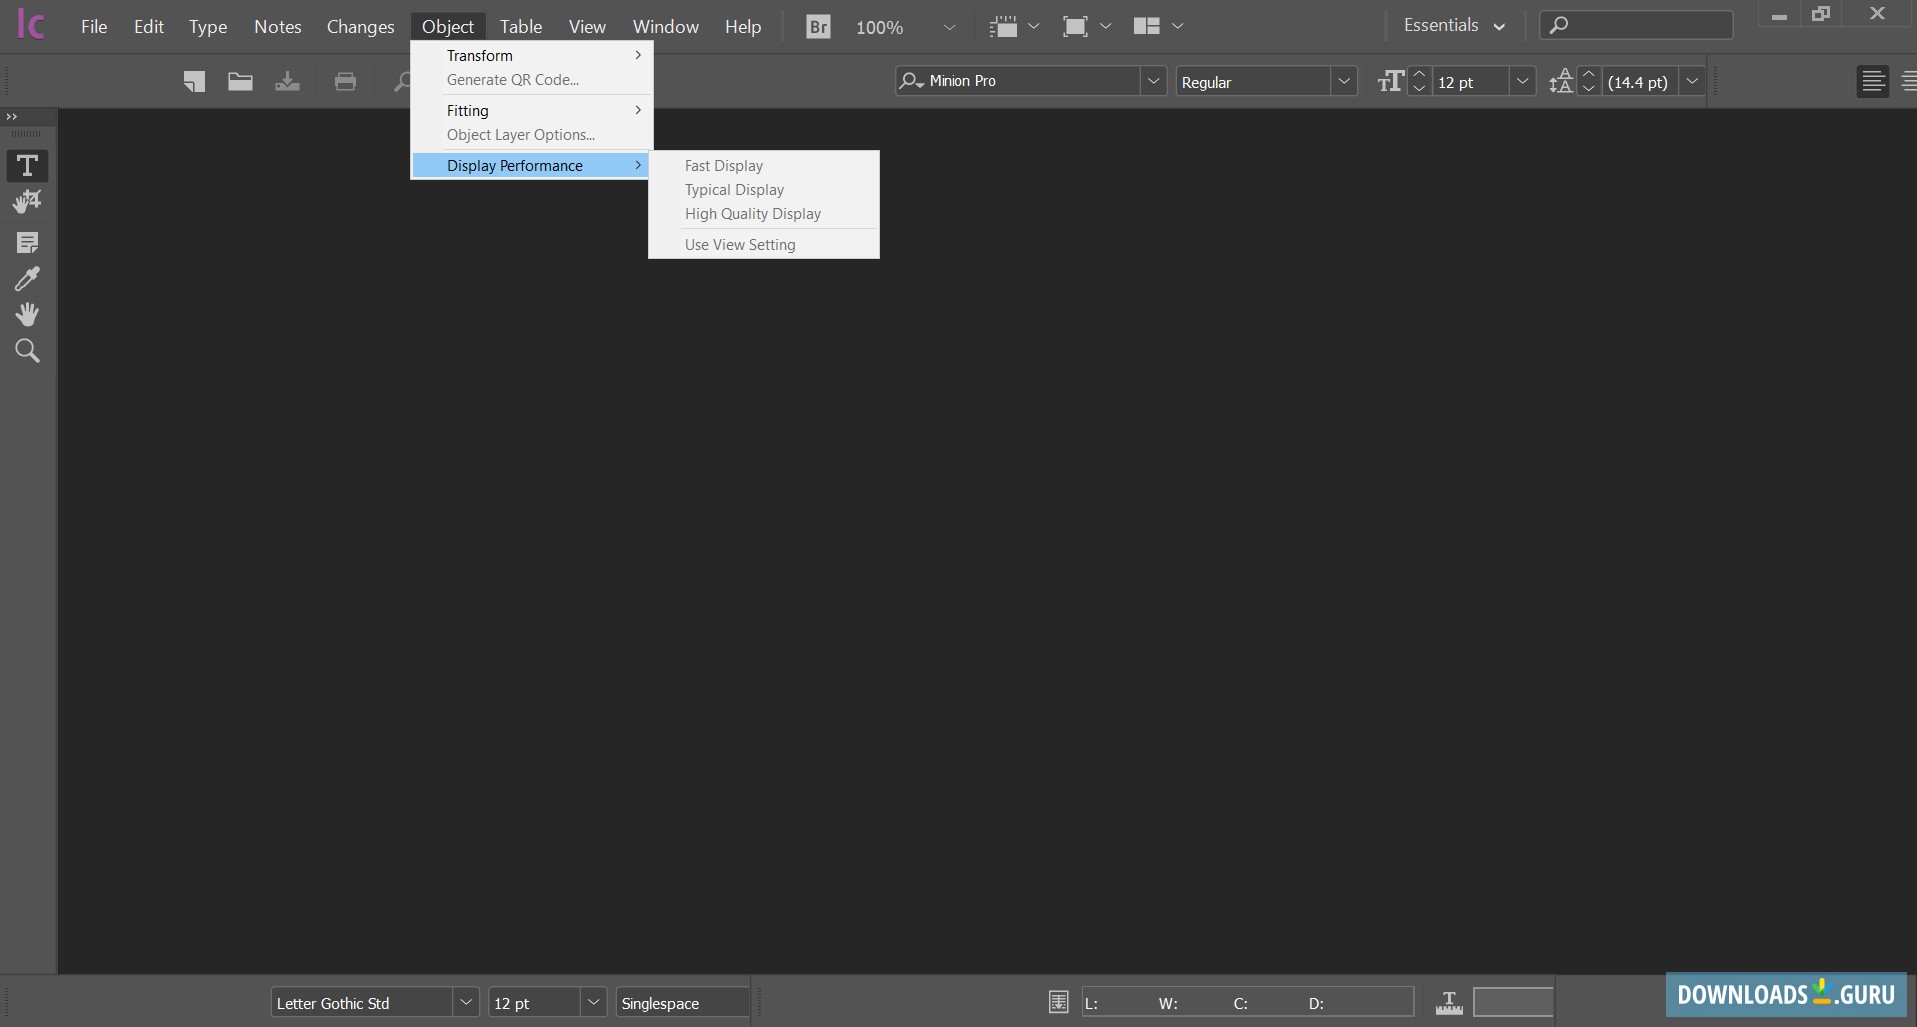 instal the new version for apple Adobe InCopy 2023 v18.4.0.56